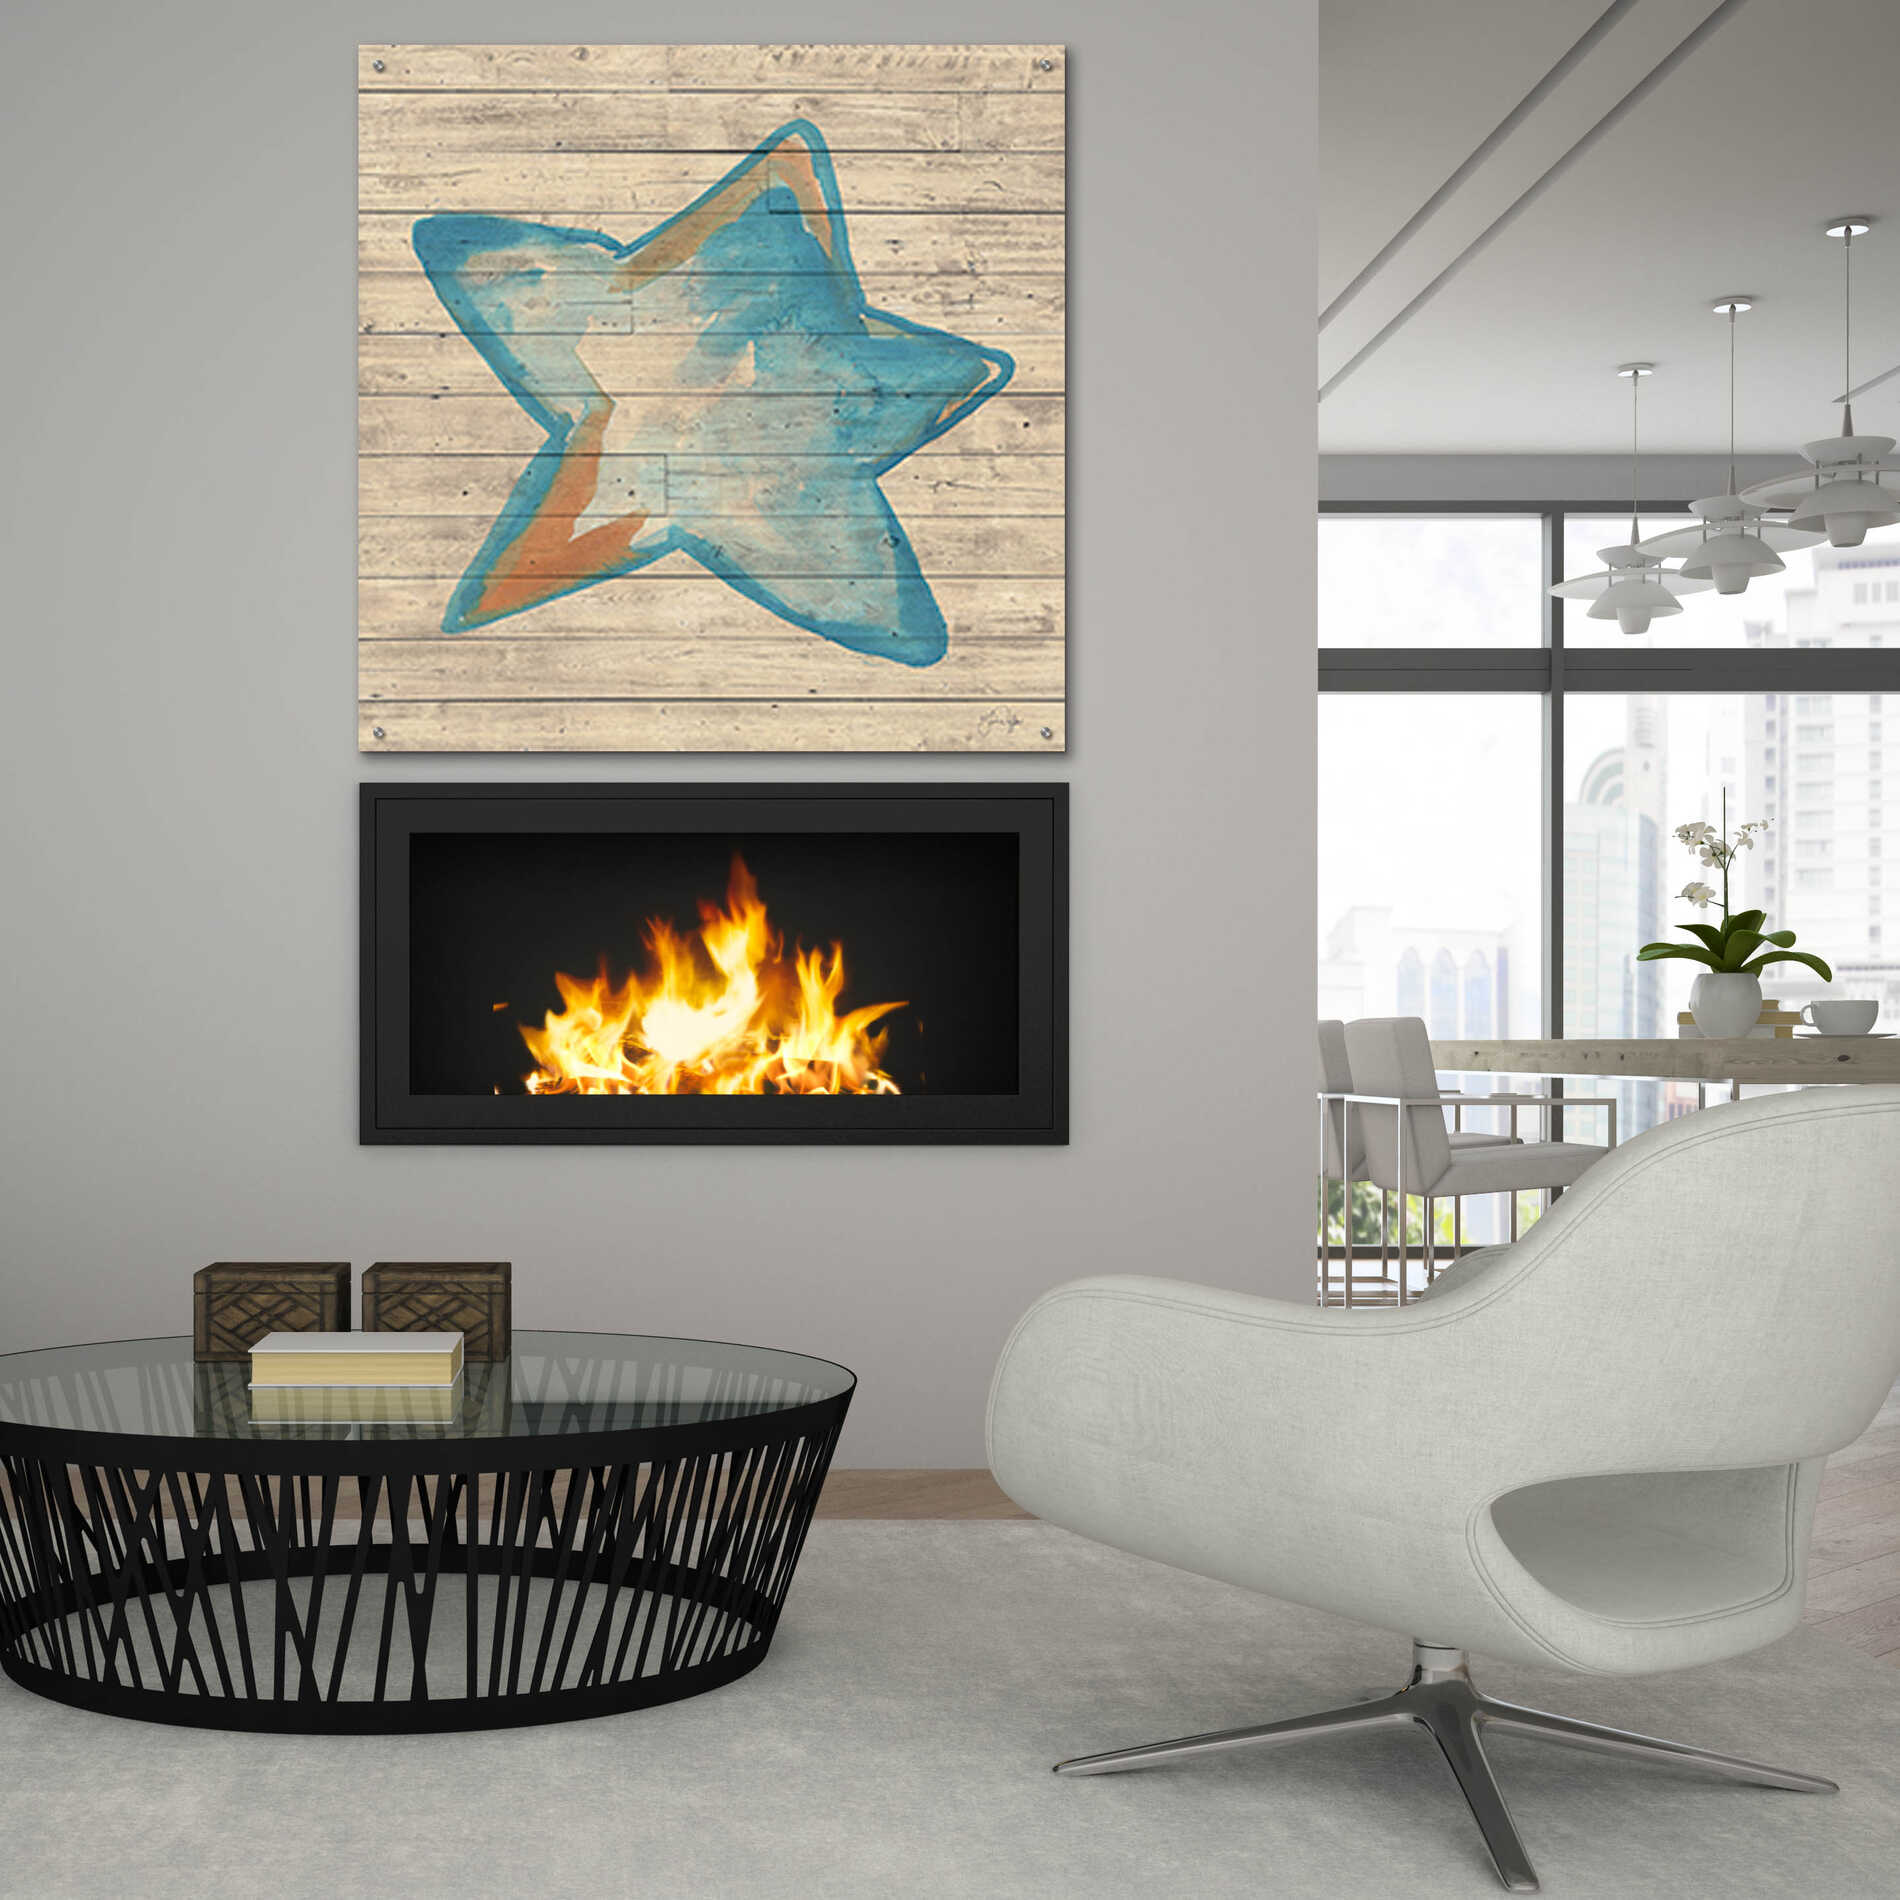 Epic Art 'A Starfish Wish' by Yass Naffas Designs, Acrylic Glass Wall Art,36x36